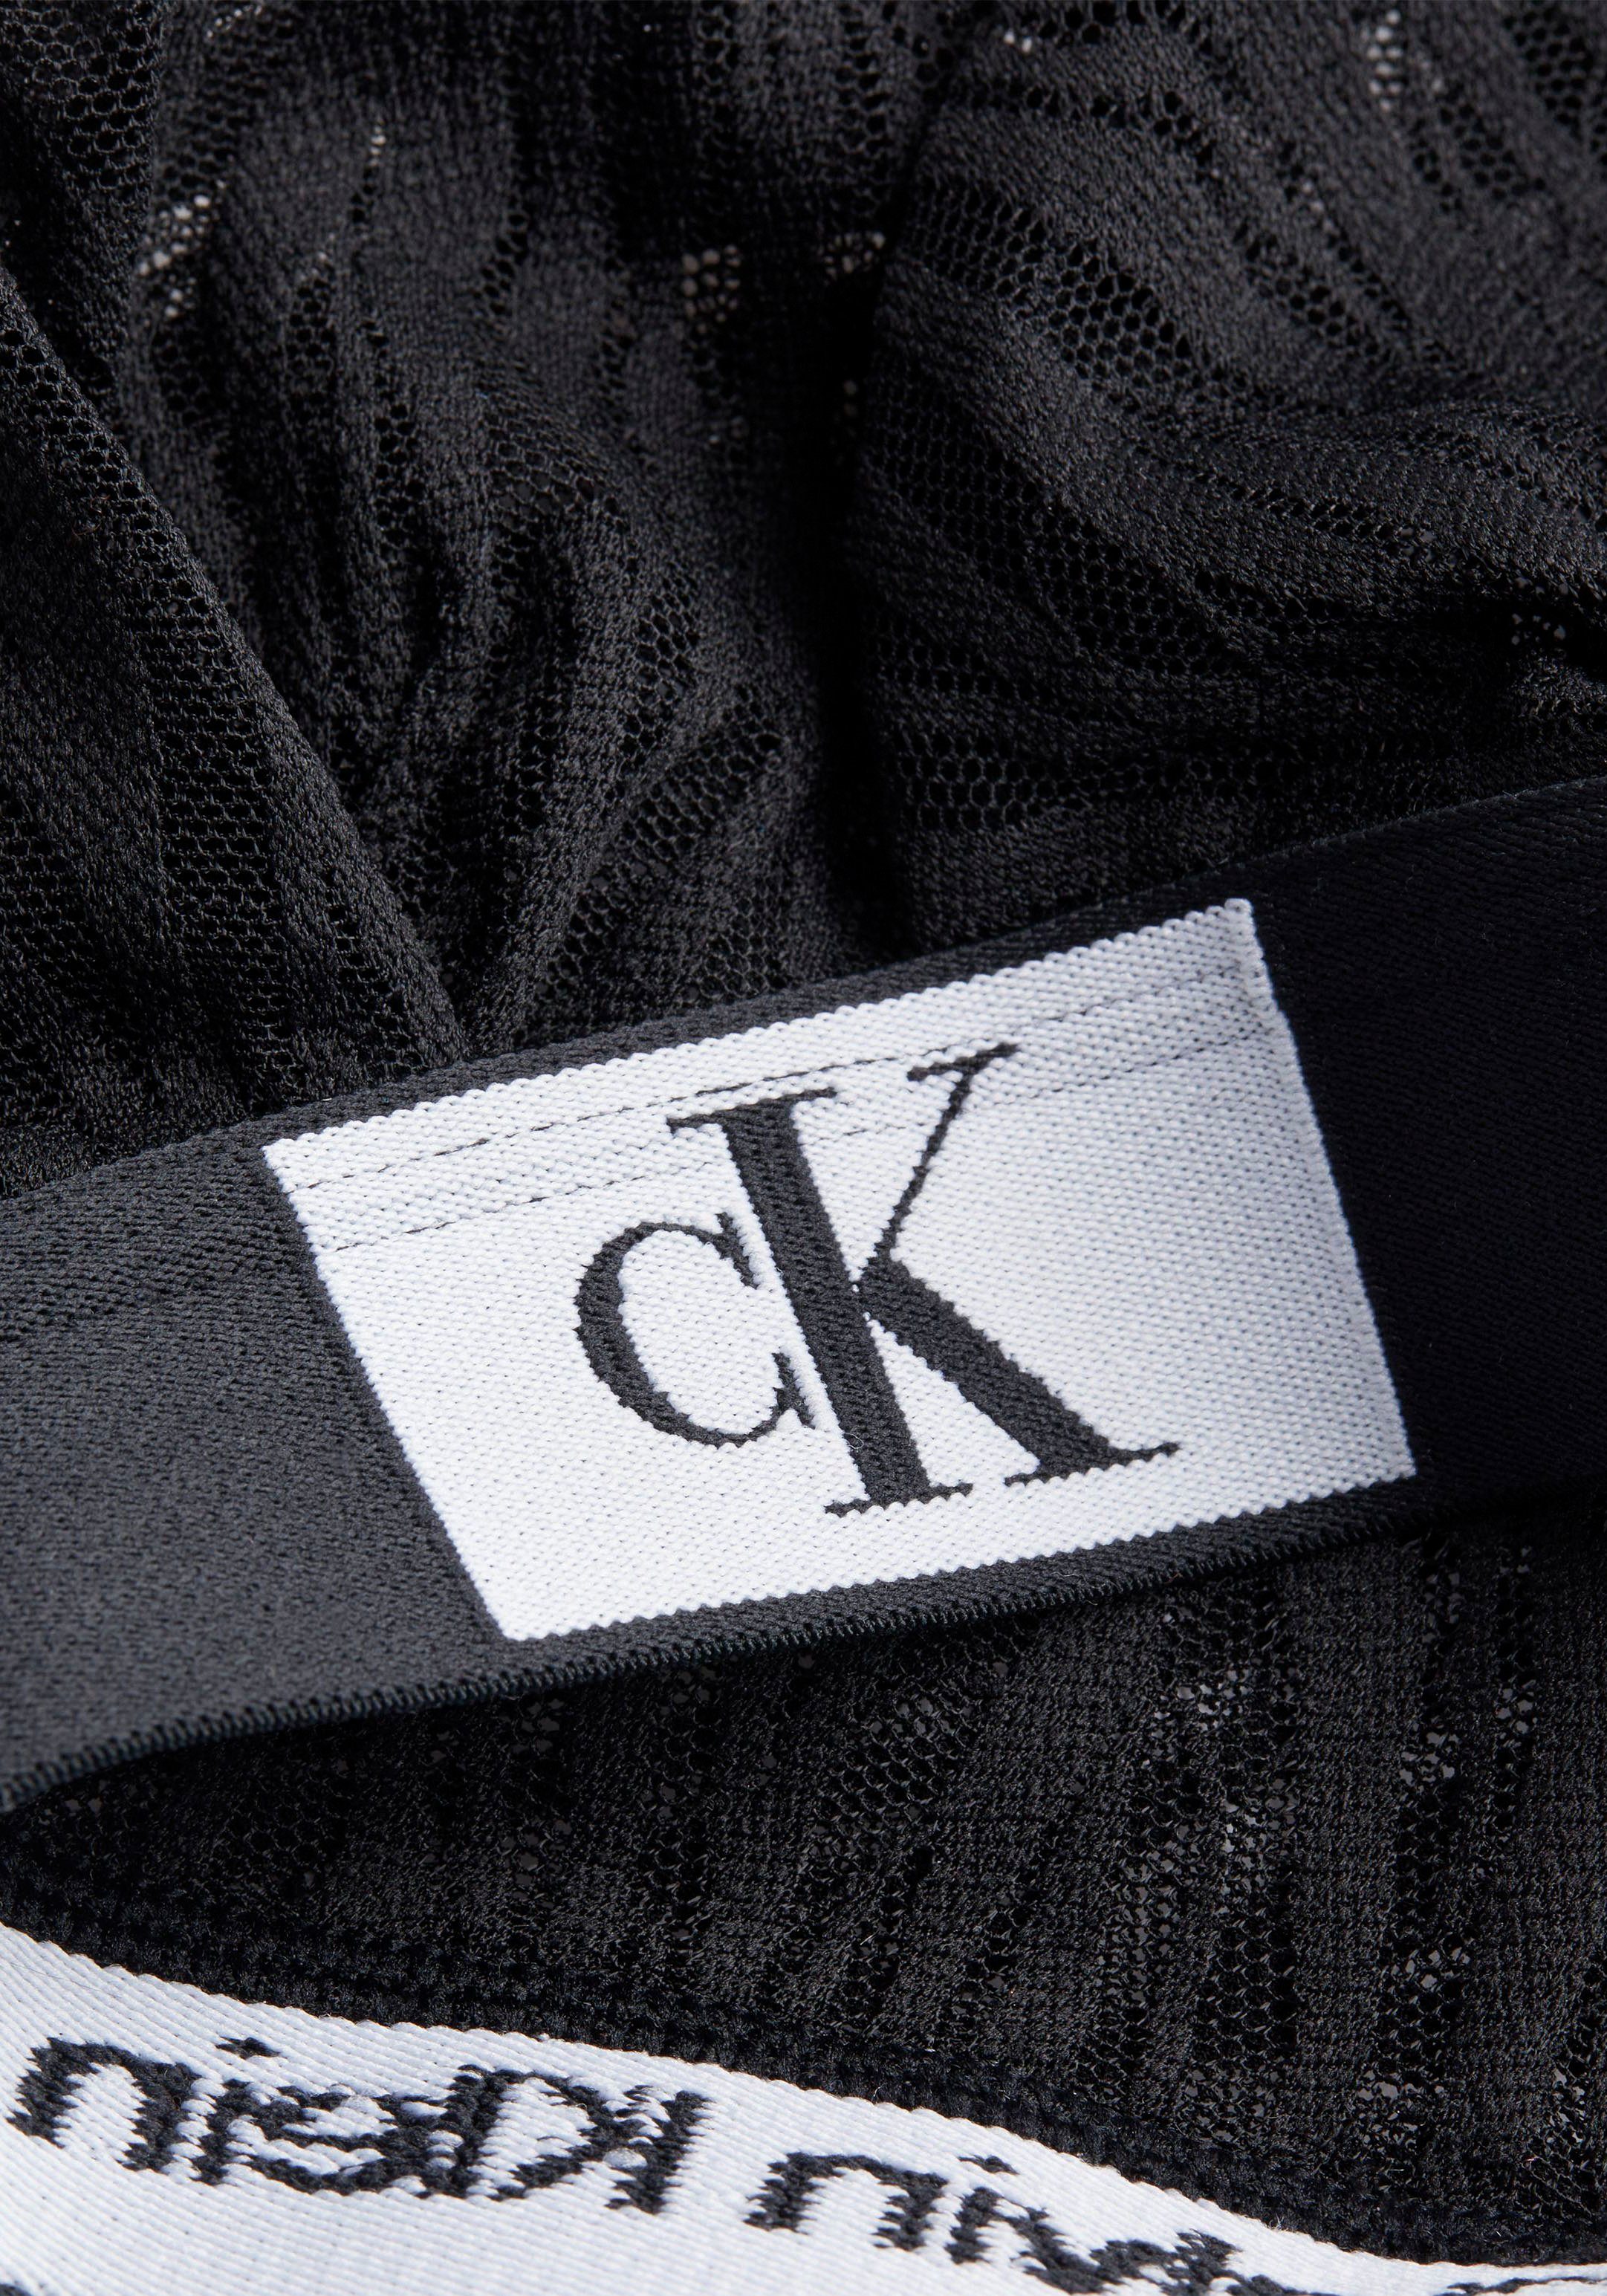 Klein sportlichem Calvin Triangel-BH mit Elastikbund schwarz Underwear